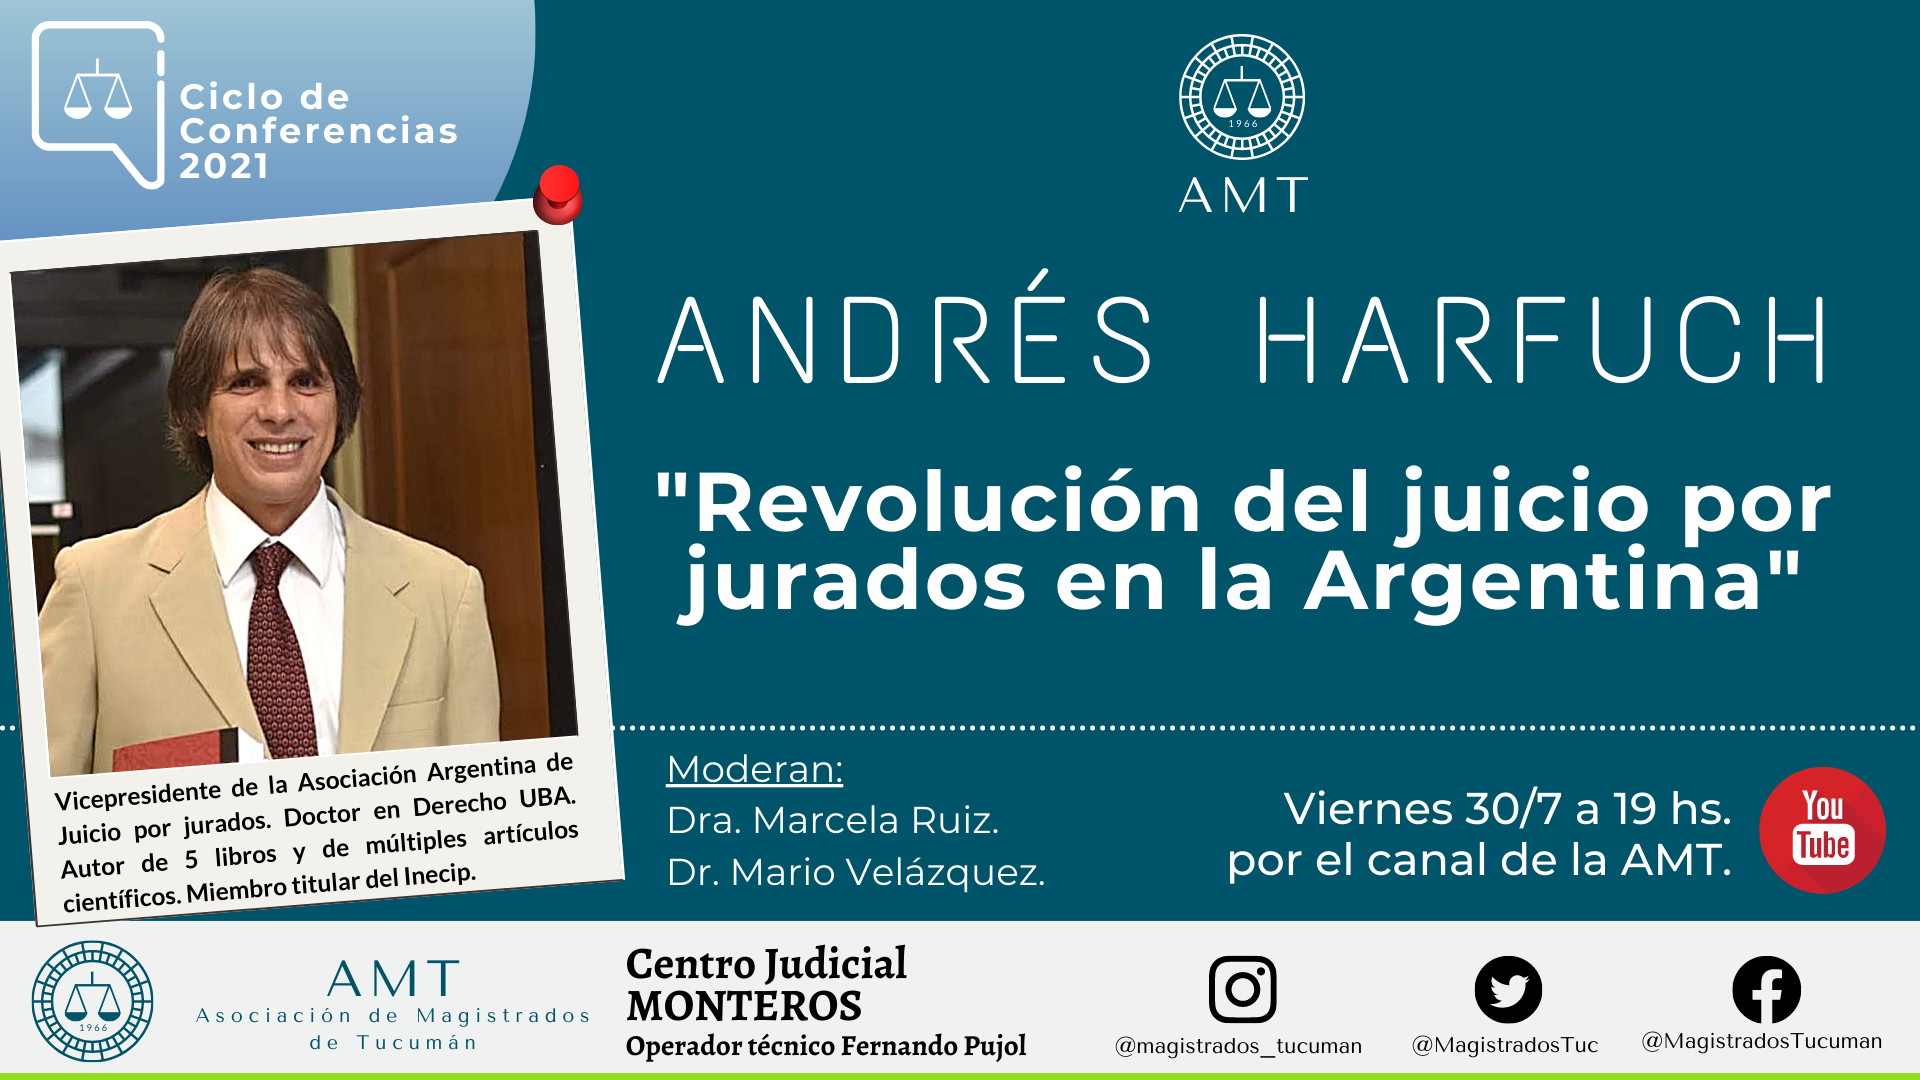 Vuelva a ver la conferencia de Andrés Harfuch «Revolución del juicio por jurados en la Argentina»